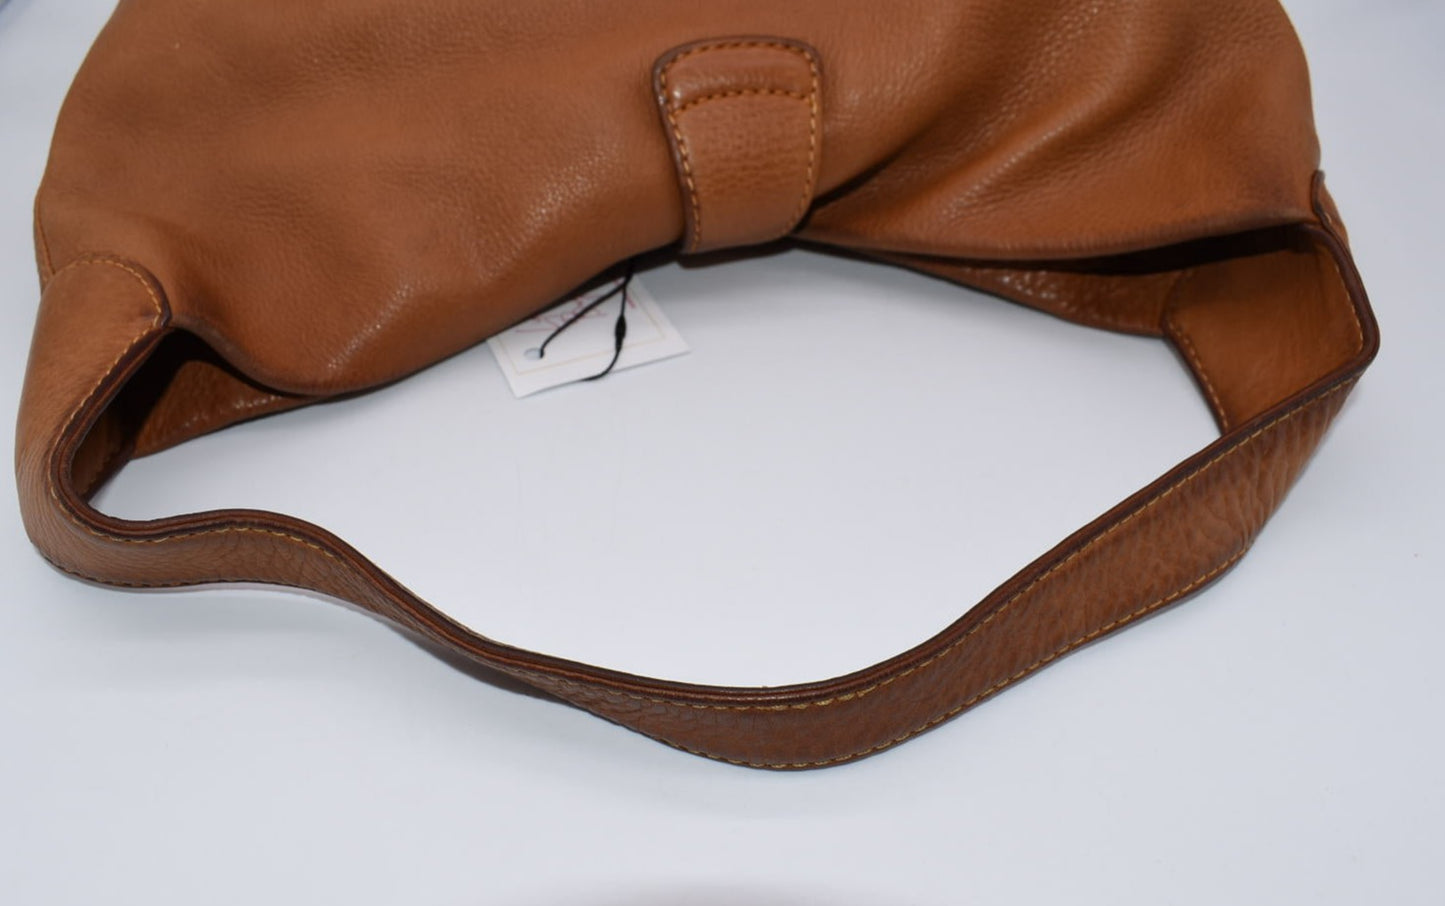 Vintage Dooney & Bourke Pebble Leather Lock Shoulder Bag